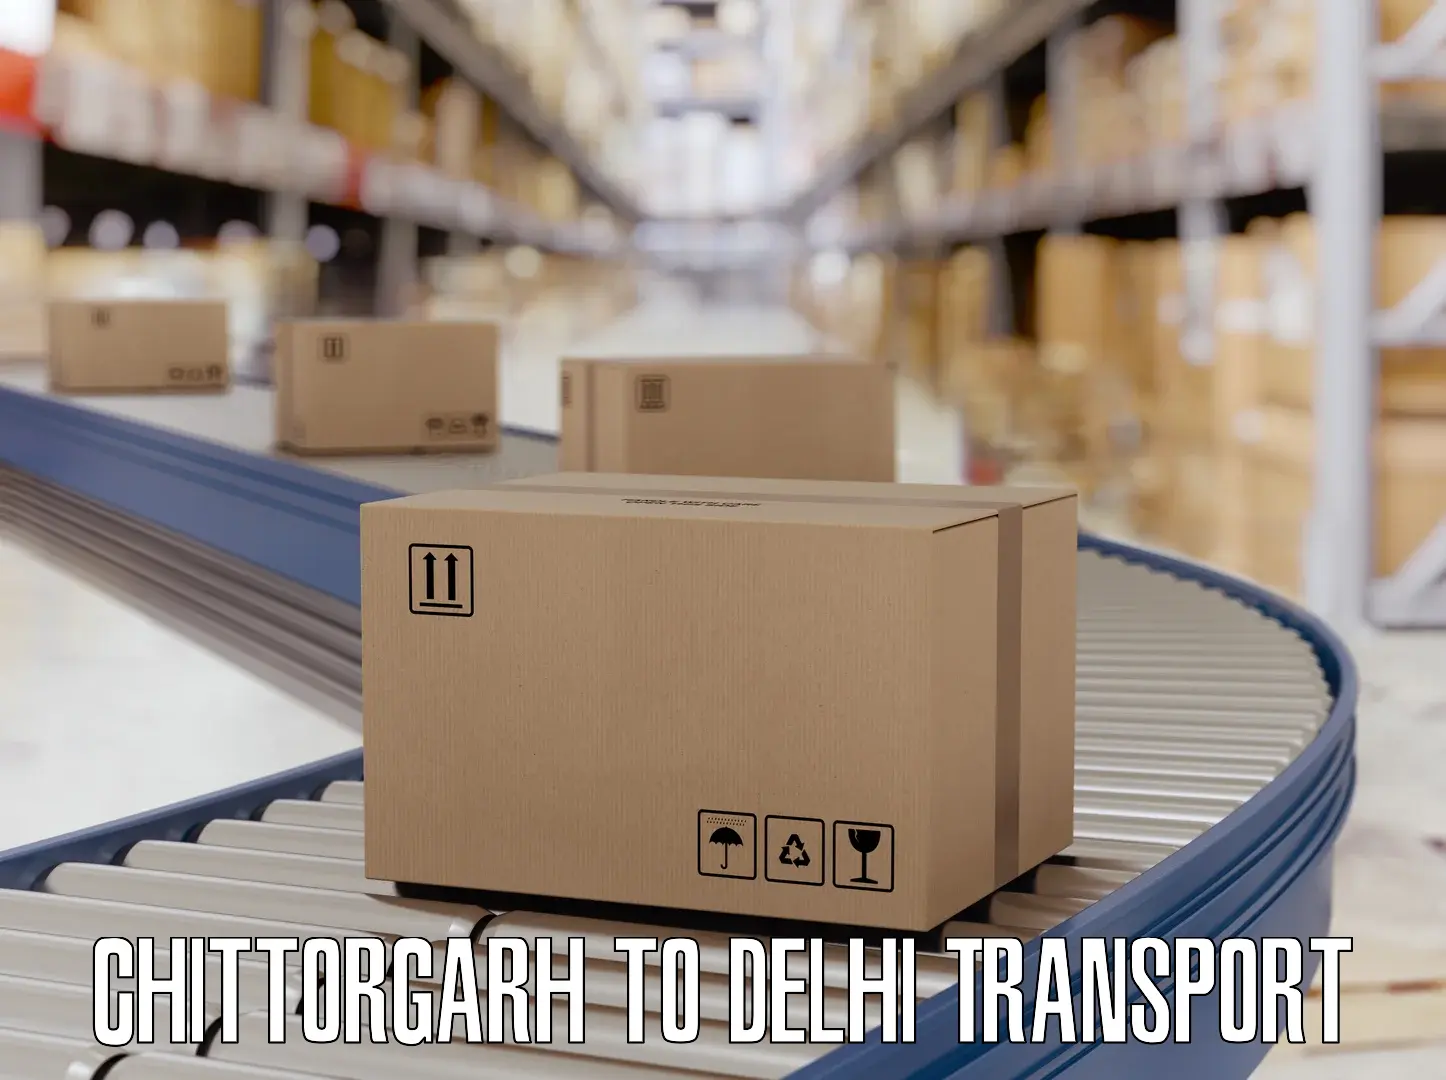 Daily transport service Chittorgarh to IIT Delhi